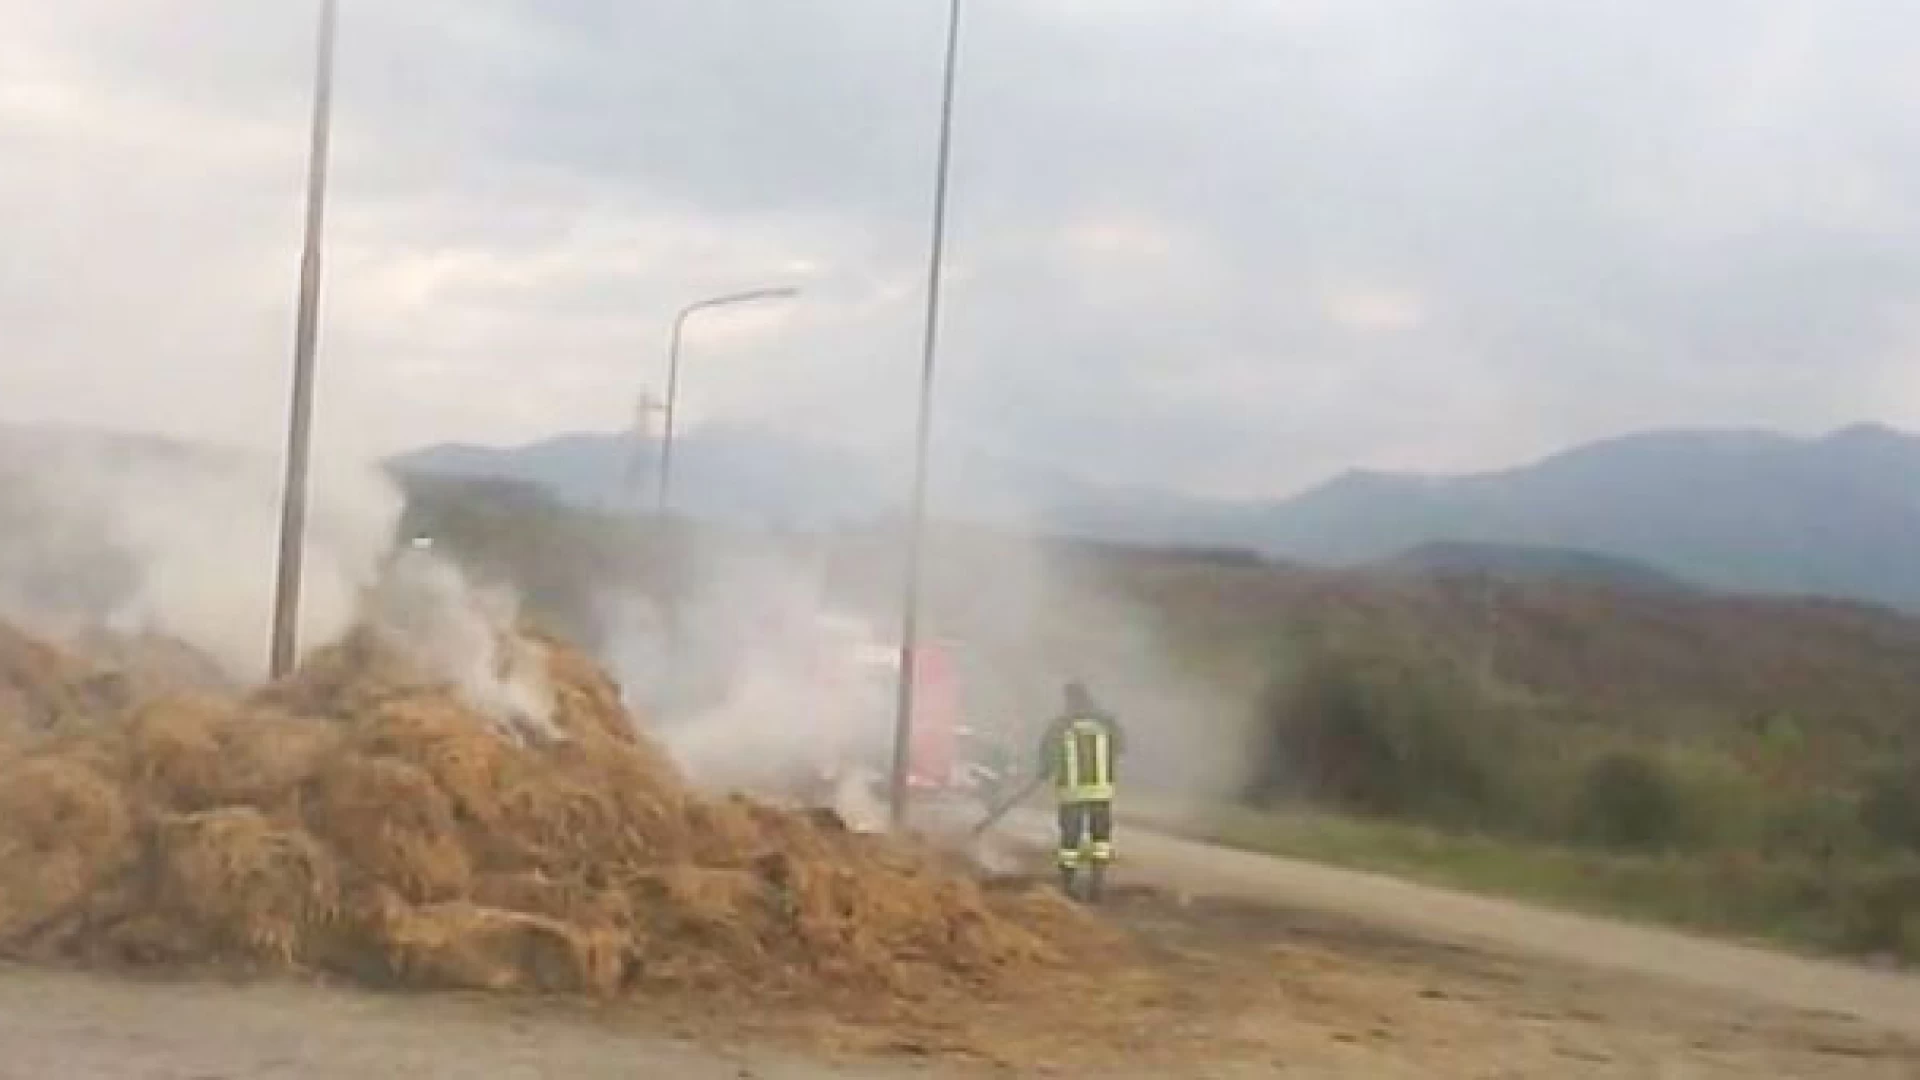 Colli a Volturno: ancora fiamme nella zona Pip collese. Il video della nostra redazione. Vigili del Fuoco in azione.